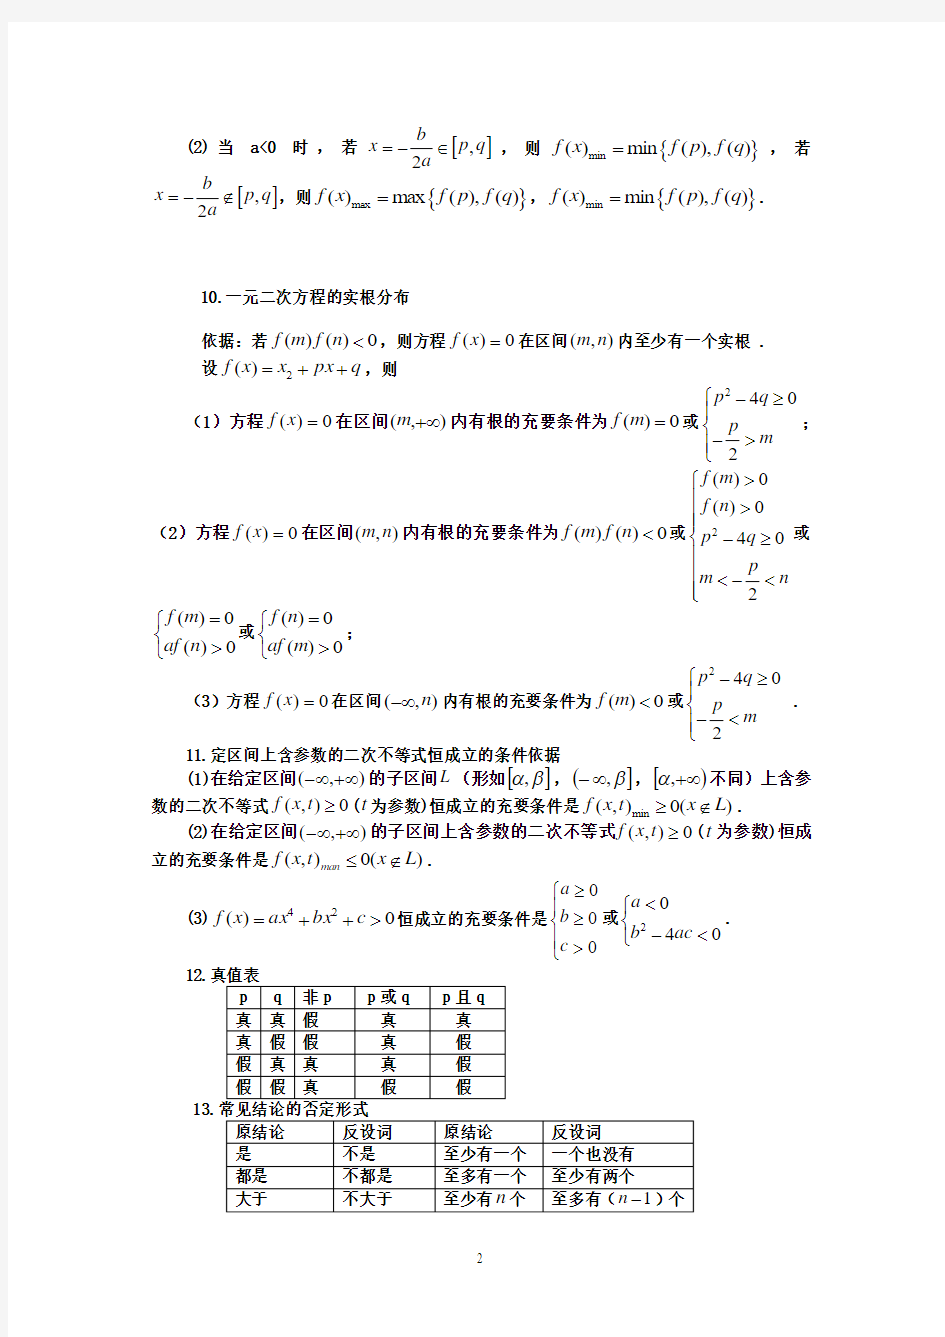 高考数学备考笔记(常用公式及常用结论)